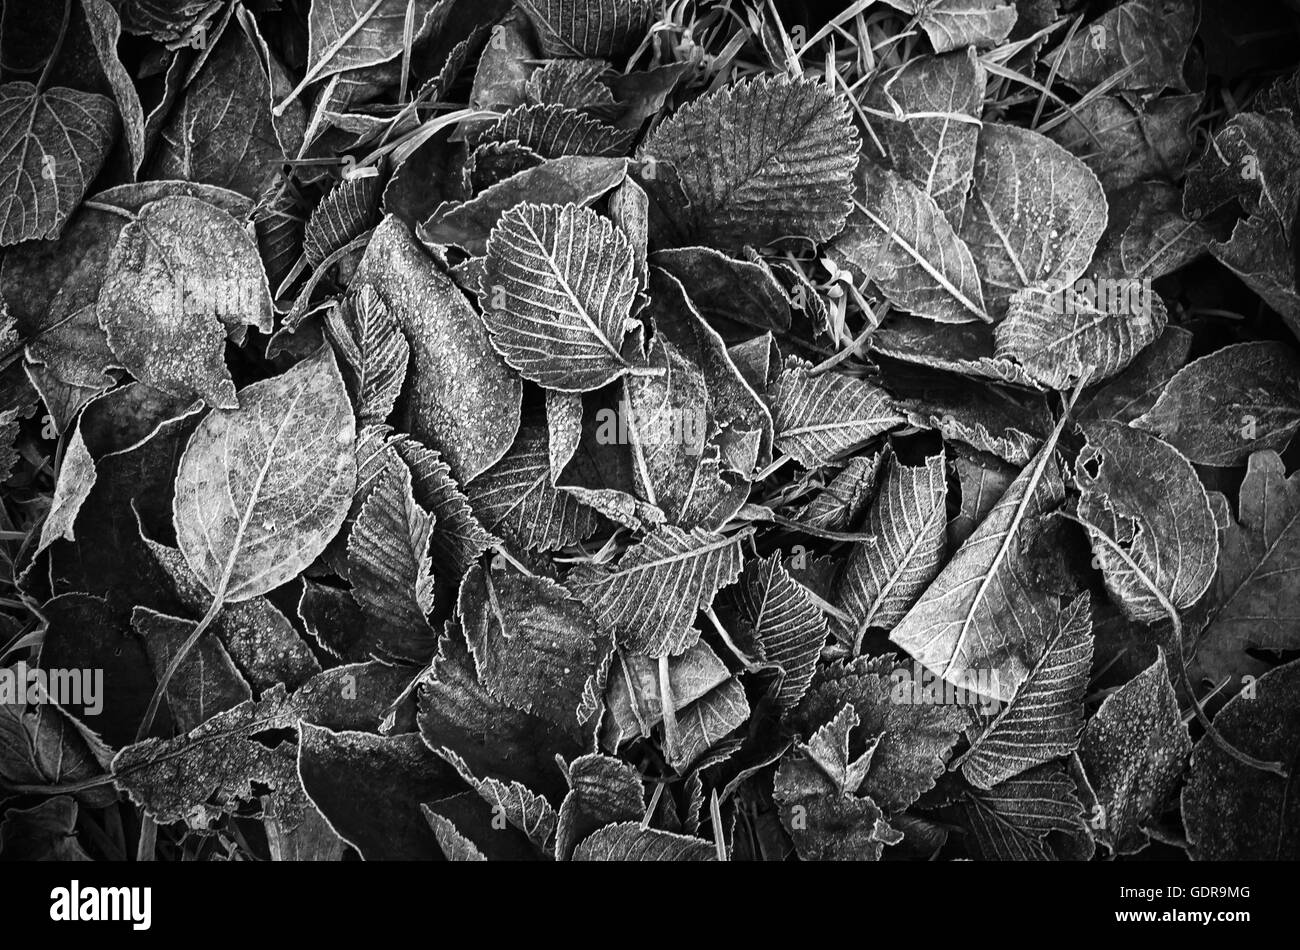 Herbstliche Laub lag auf dem Boden, schwarz / weiß Foto Hintergrundtextur Stockfoto